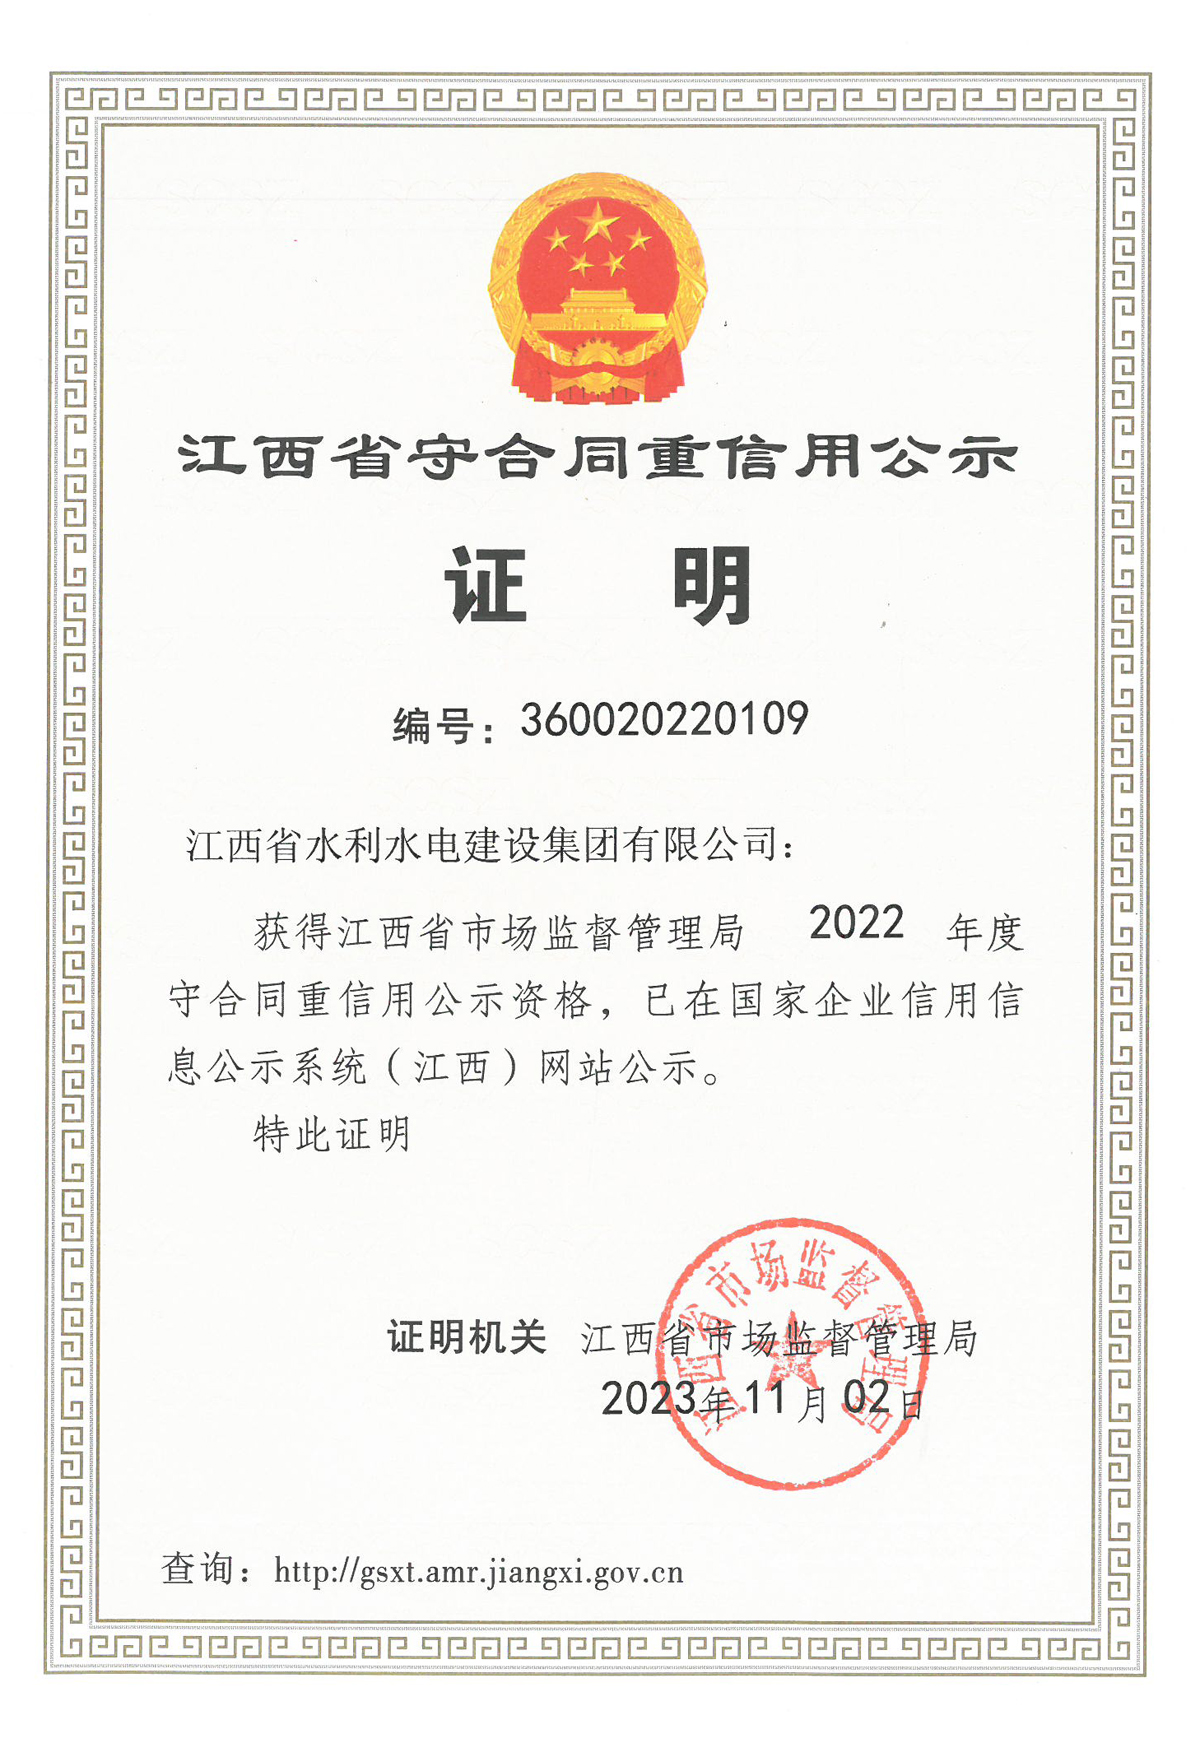 集團榮獲江西省2022年度“守合同重信用”公示資格